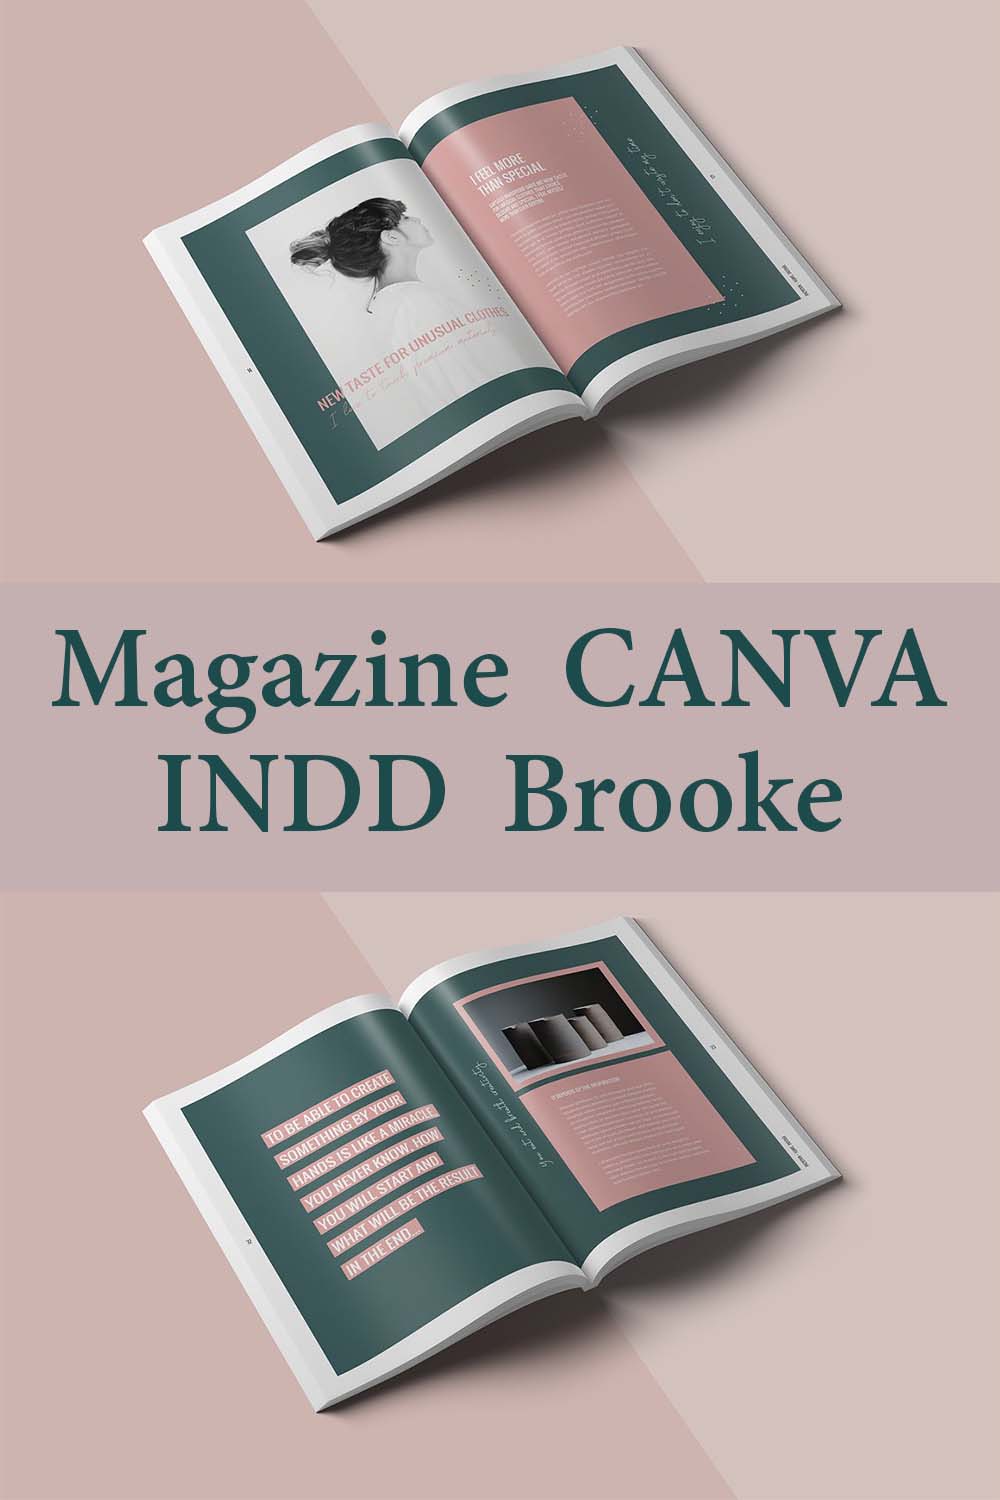 Magazine CANVA INDD Brooke pinterest image.